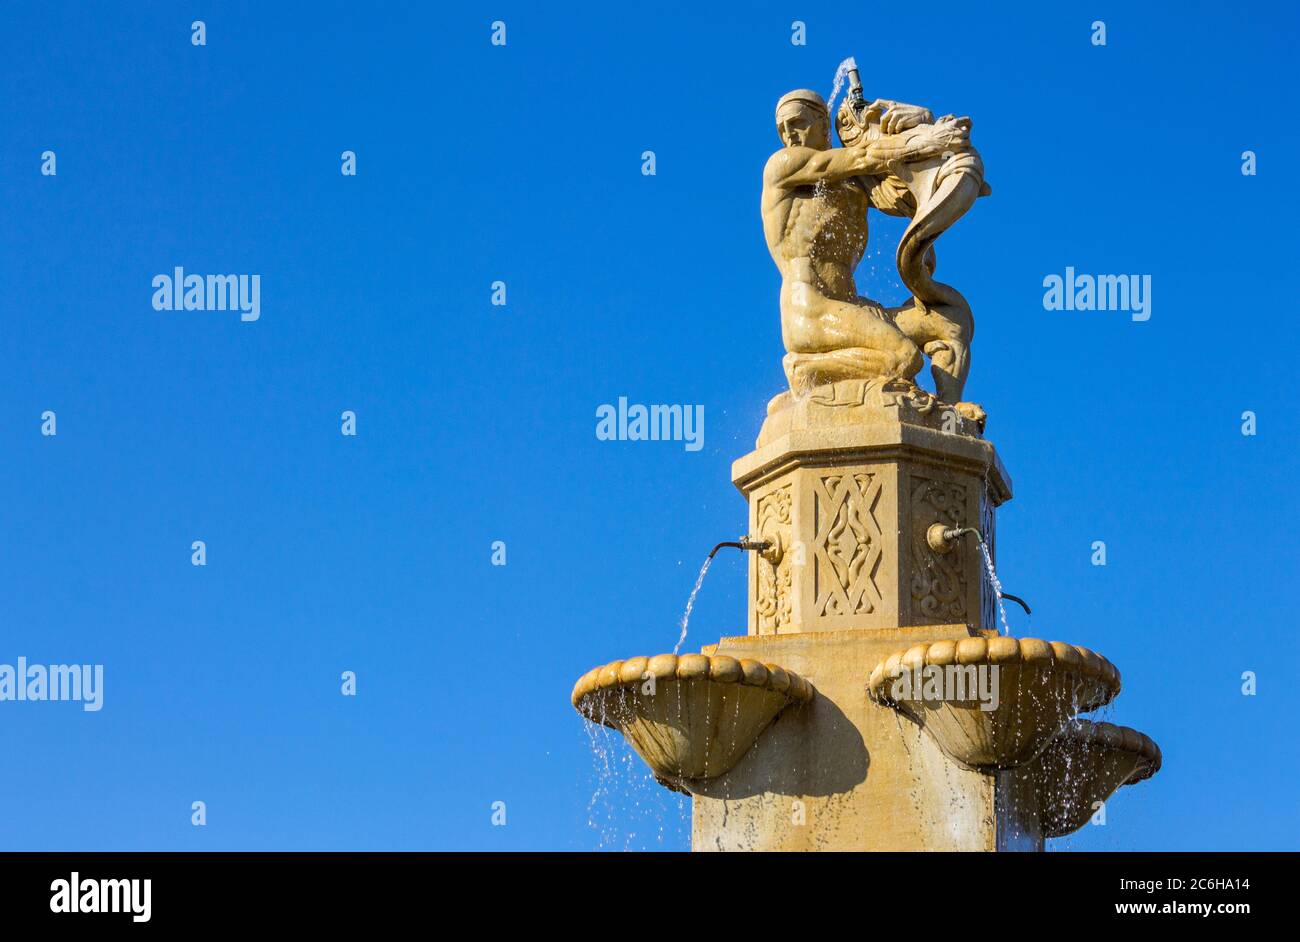 Italia, Puglia, Mola di Bari, fontana in Piazza XX settembre. Foto Stock